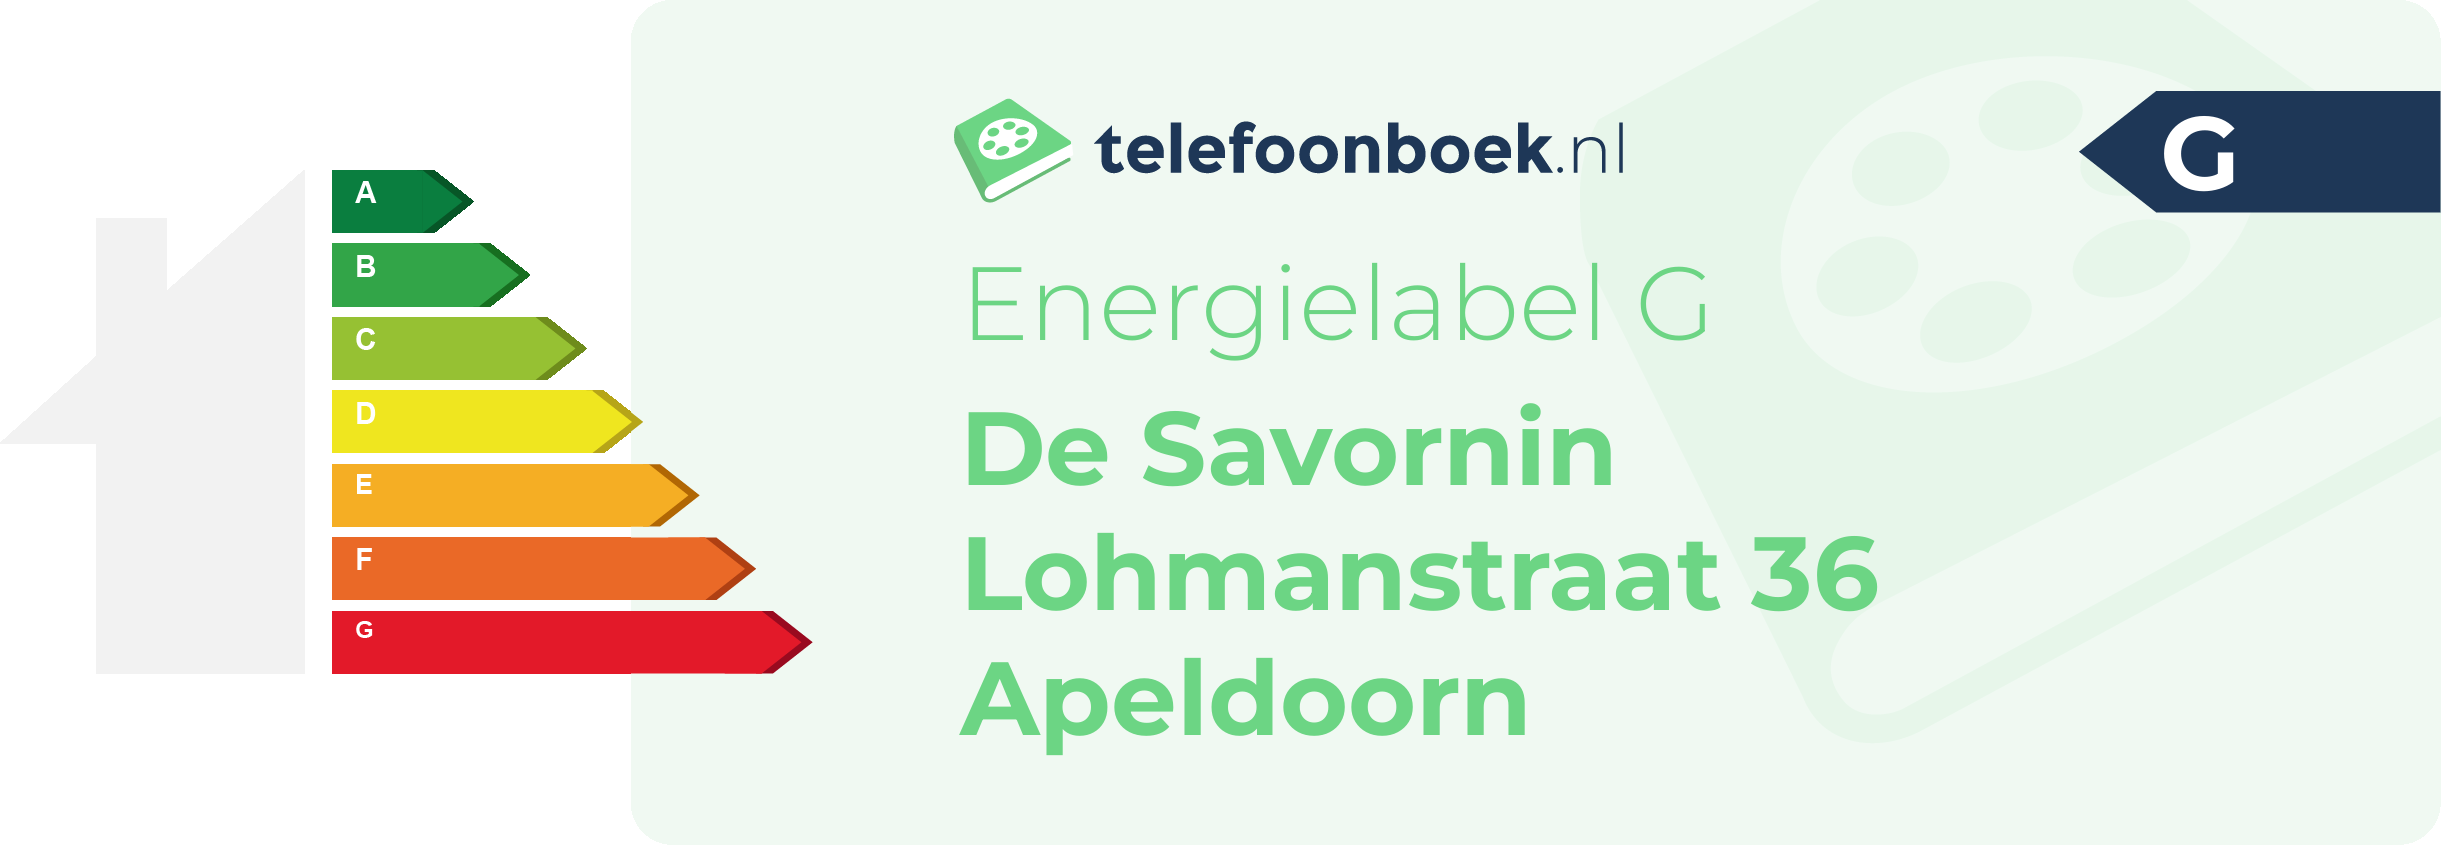 Energielabel De Savornin Lohmanstraat 36 Apeldoorn